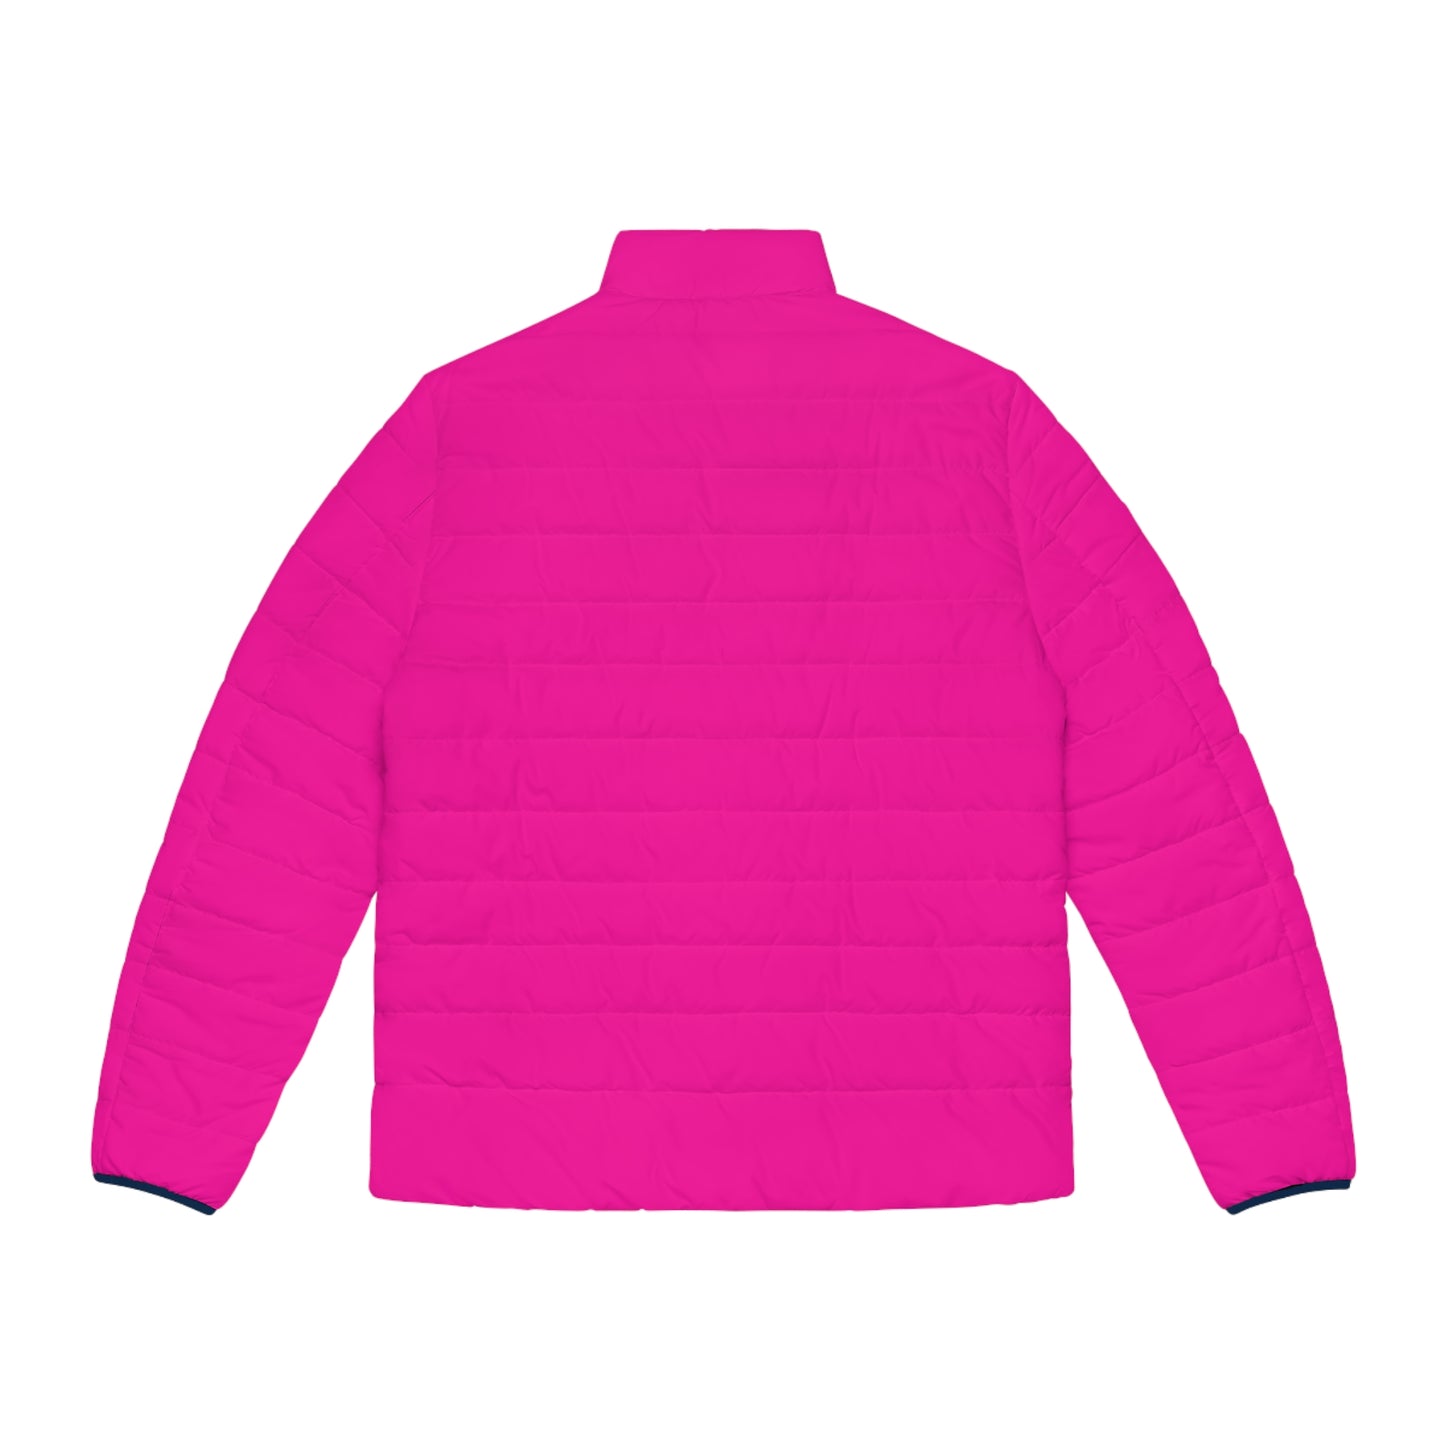 AWEROZME Neon Pink Puffer Jacket (AOP)